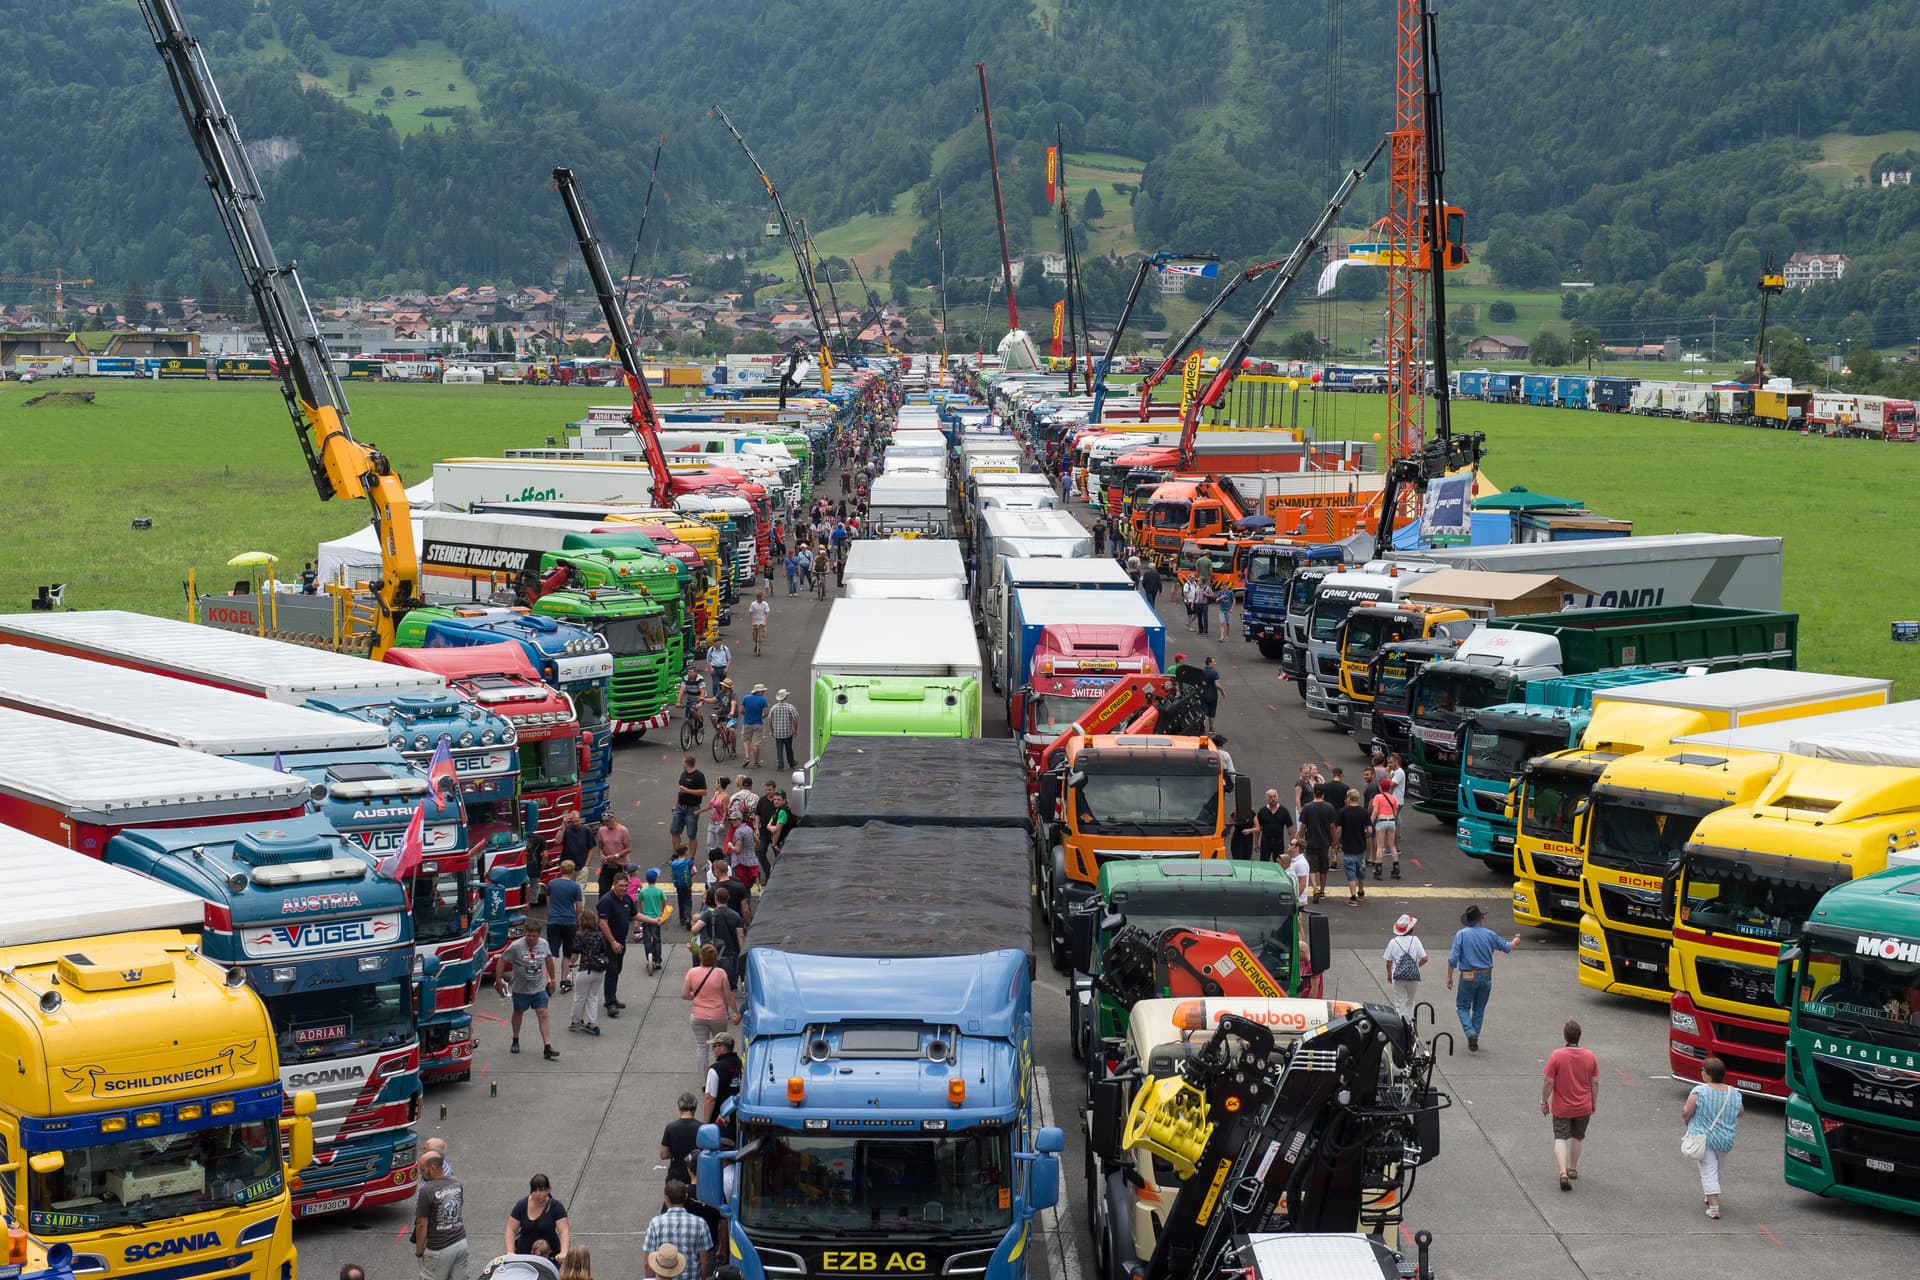 Festival del camionista